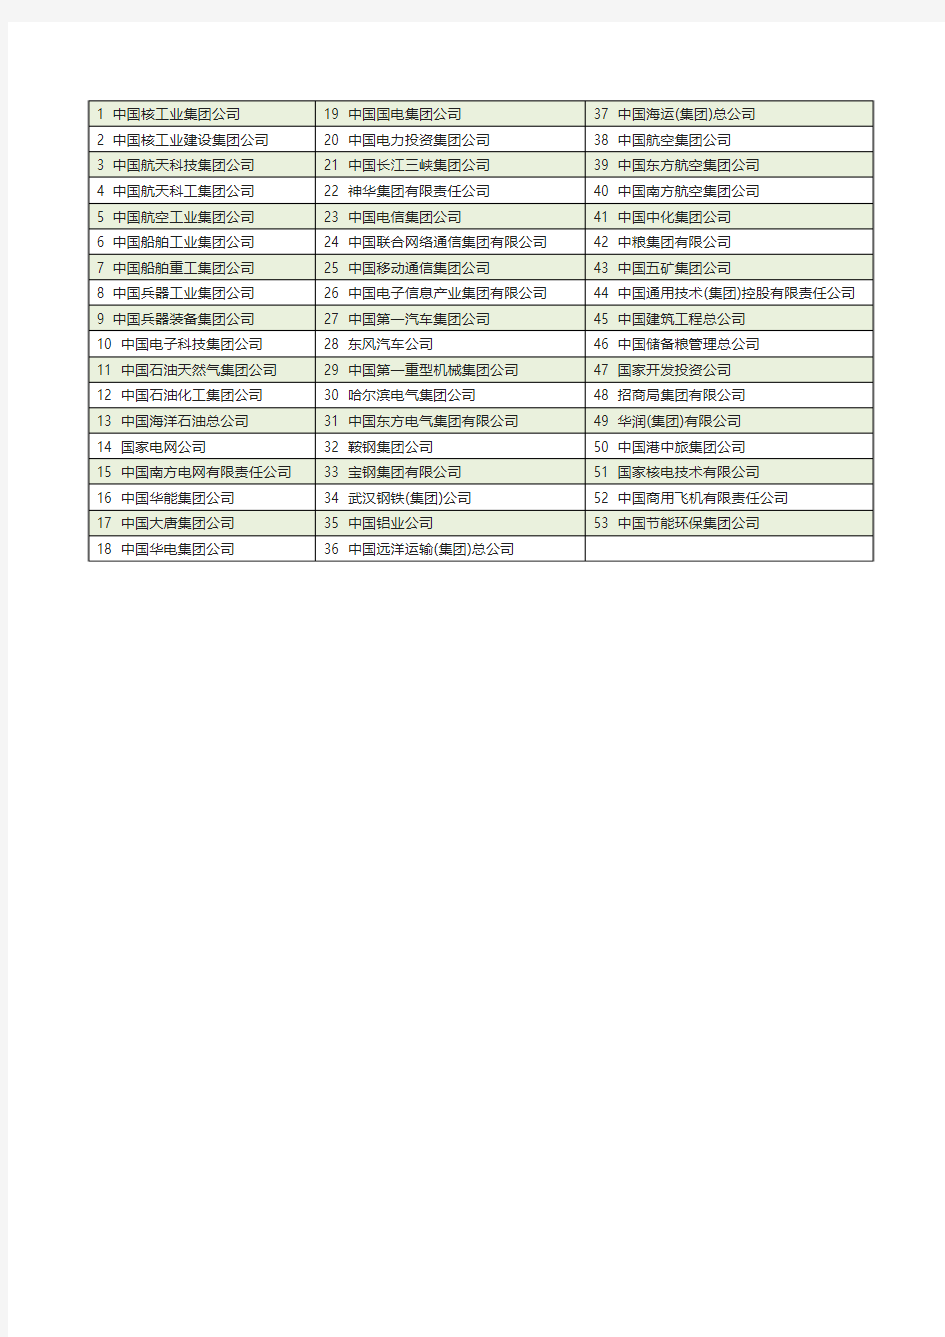 国资委53家副部级央企(名单)